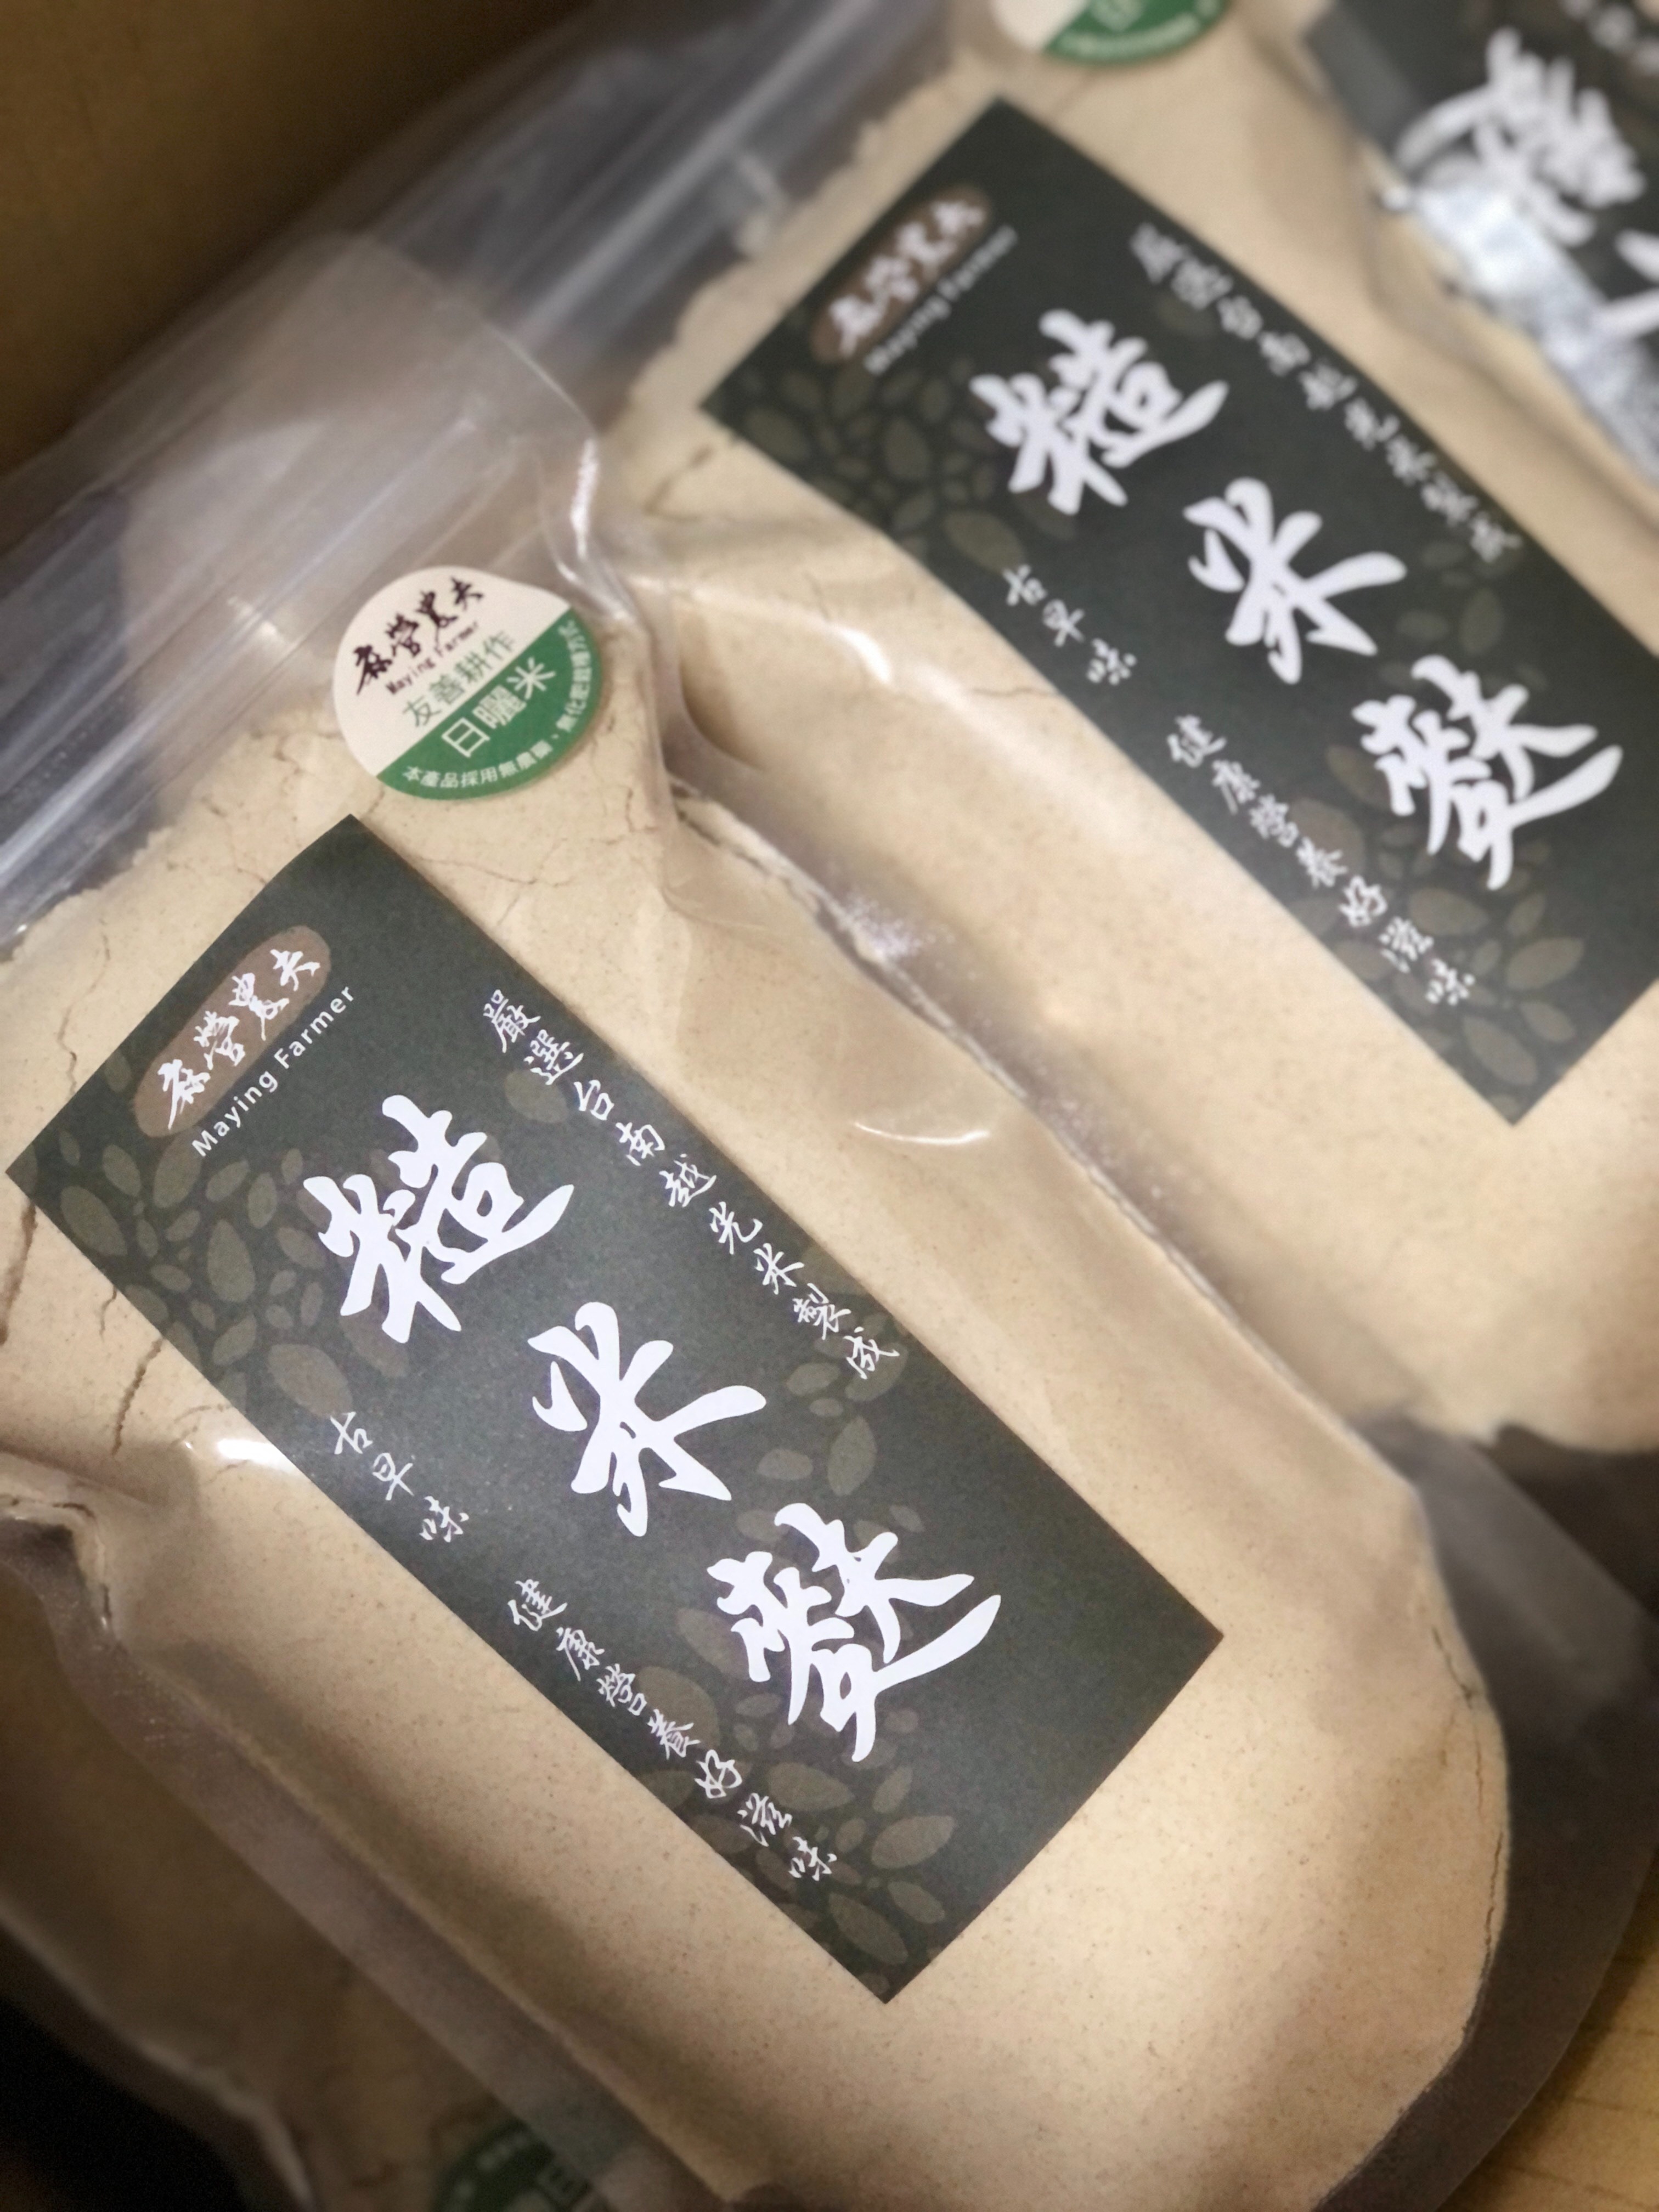 糙米麩250g